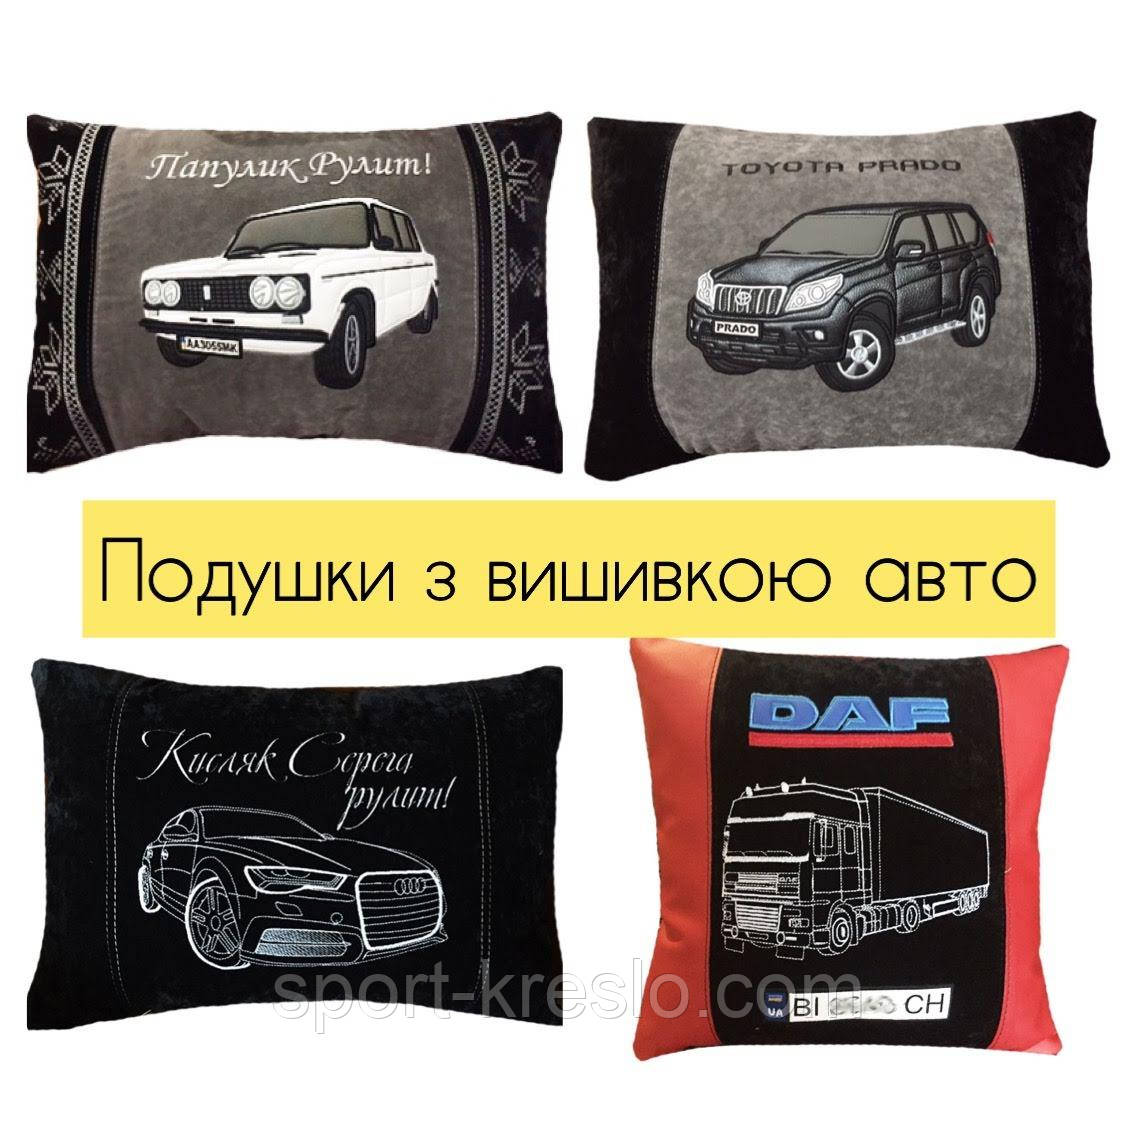 Автомобільний подушки з вишивкою логотипу, автоаксесуари у авто